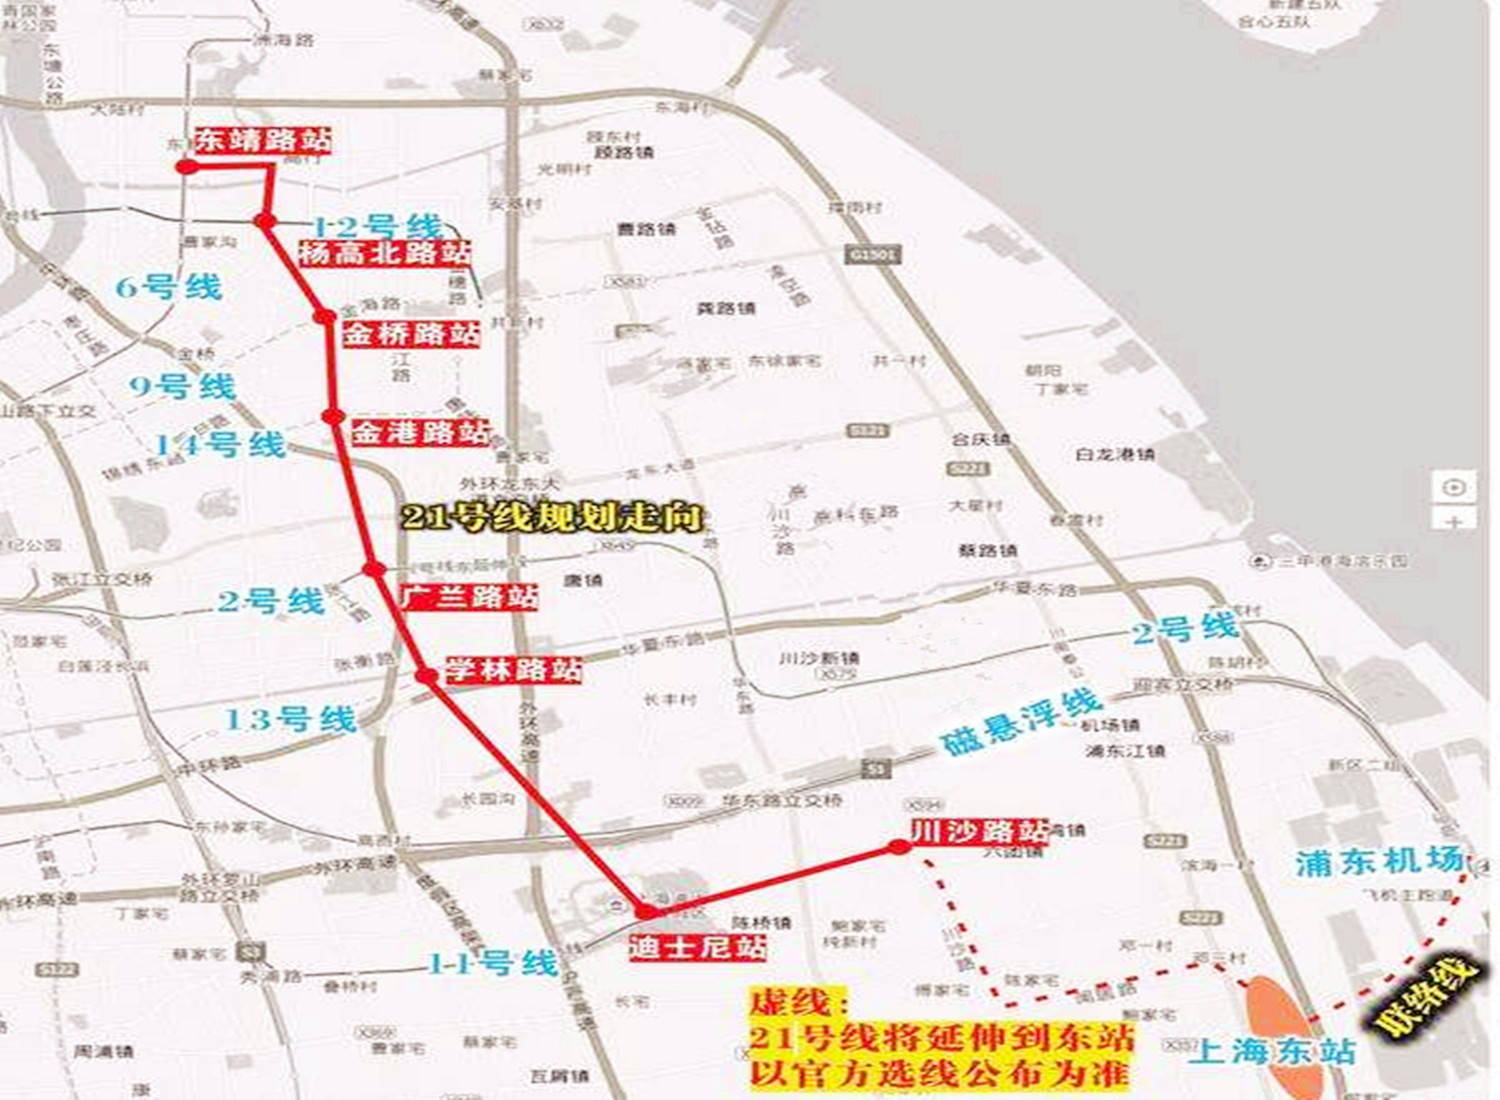 原创上海规划建设的一条地铁线,一期长约28千米,将促进浦东发展